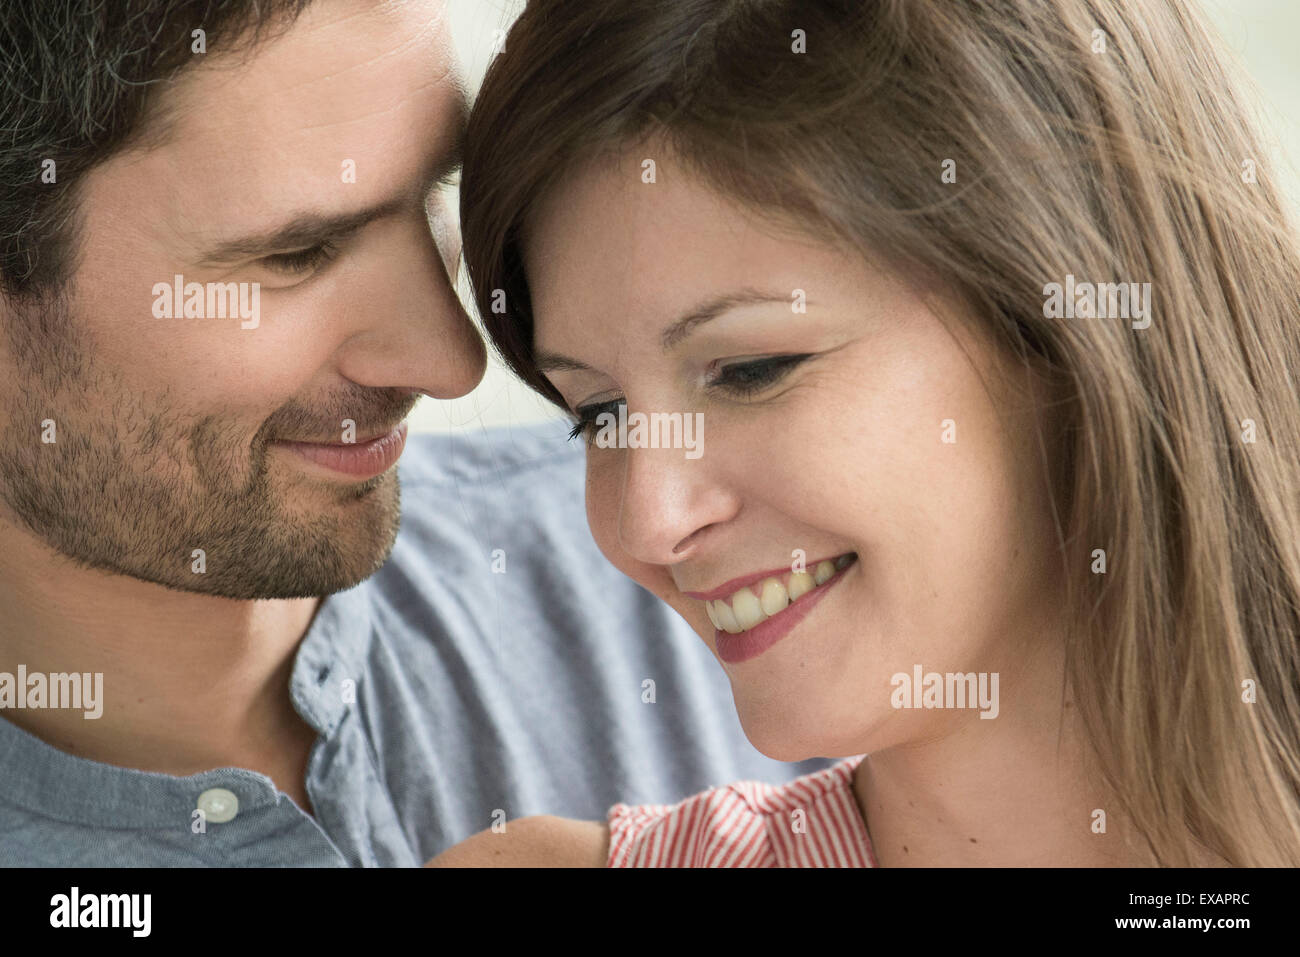 Affectionate couple, portrait Stock Photo